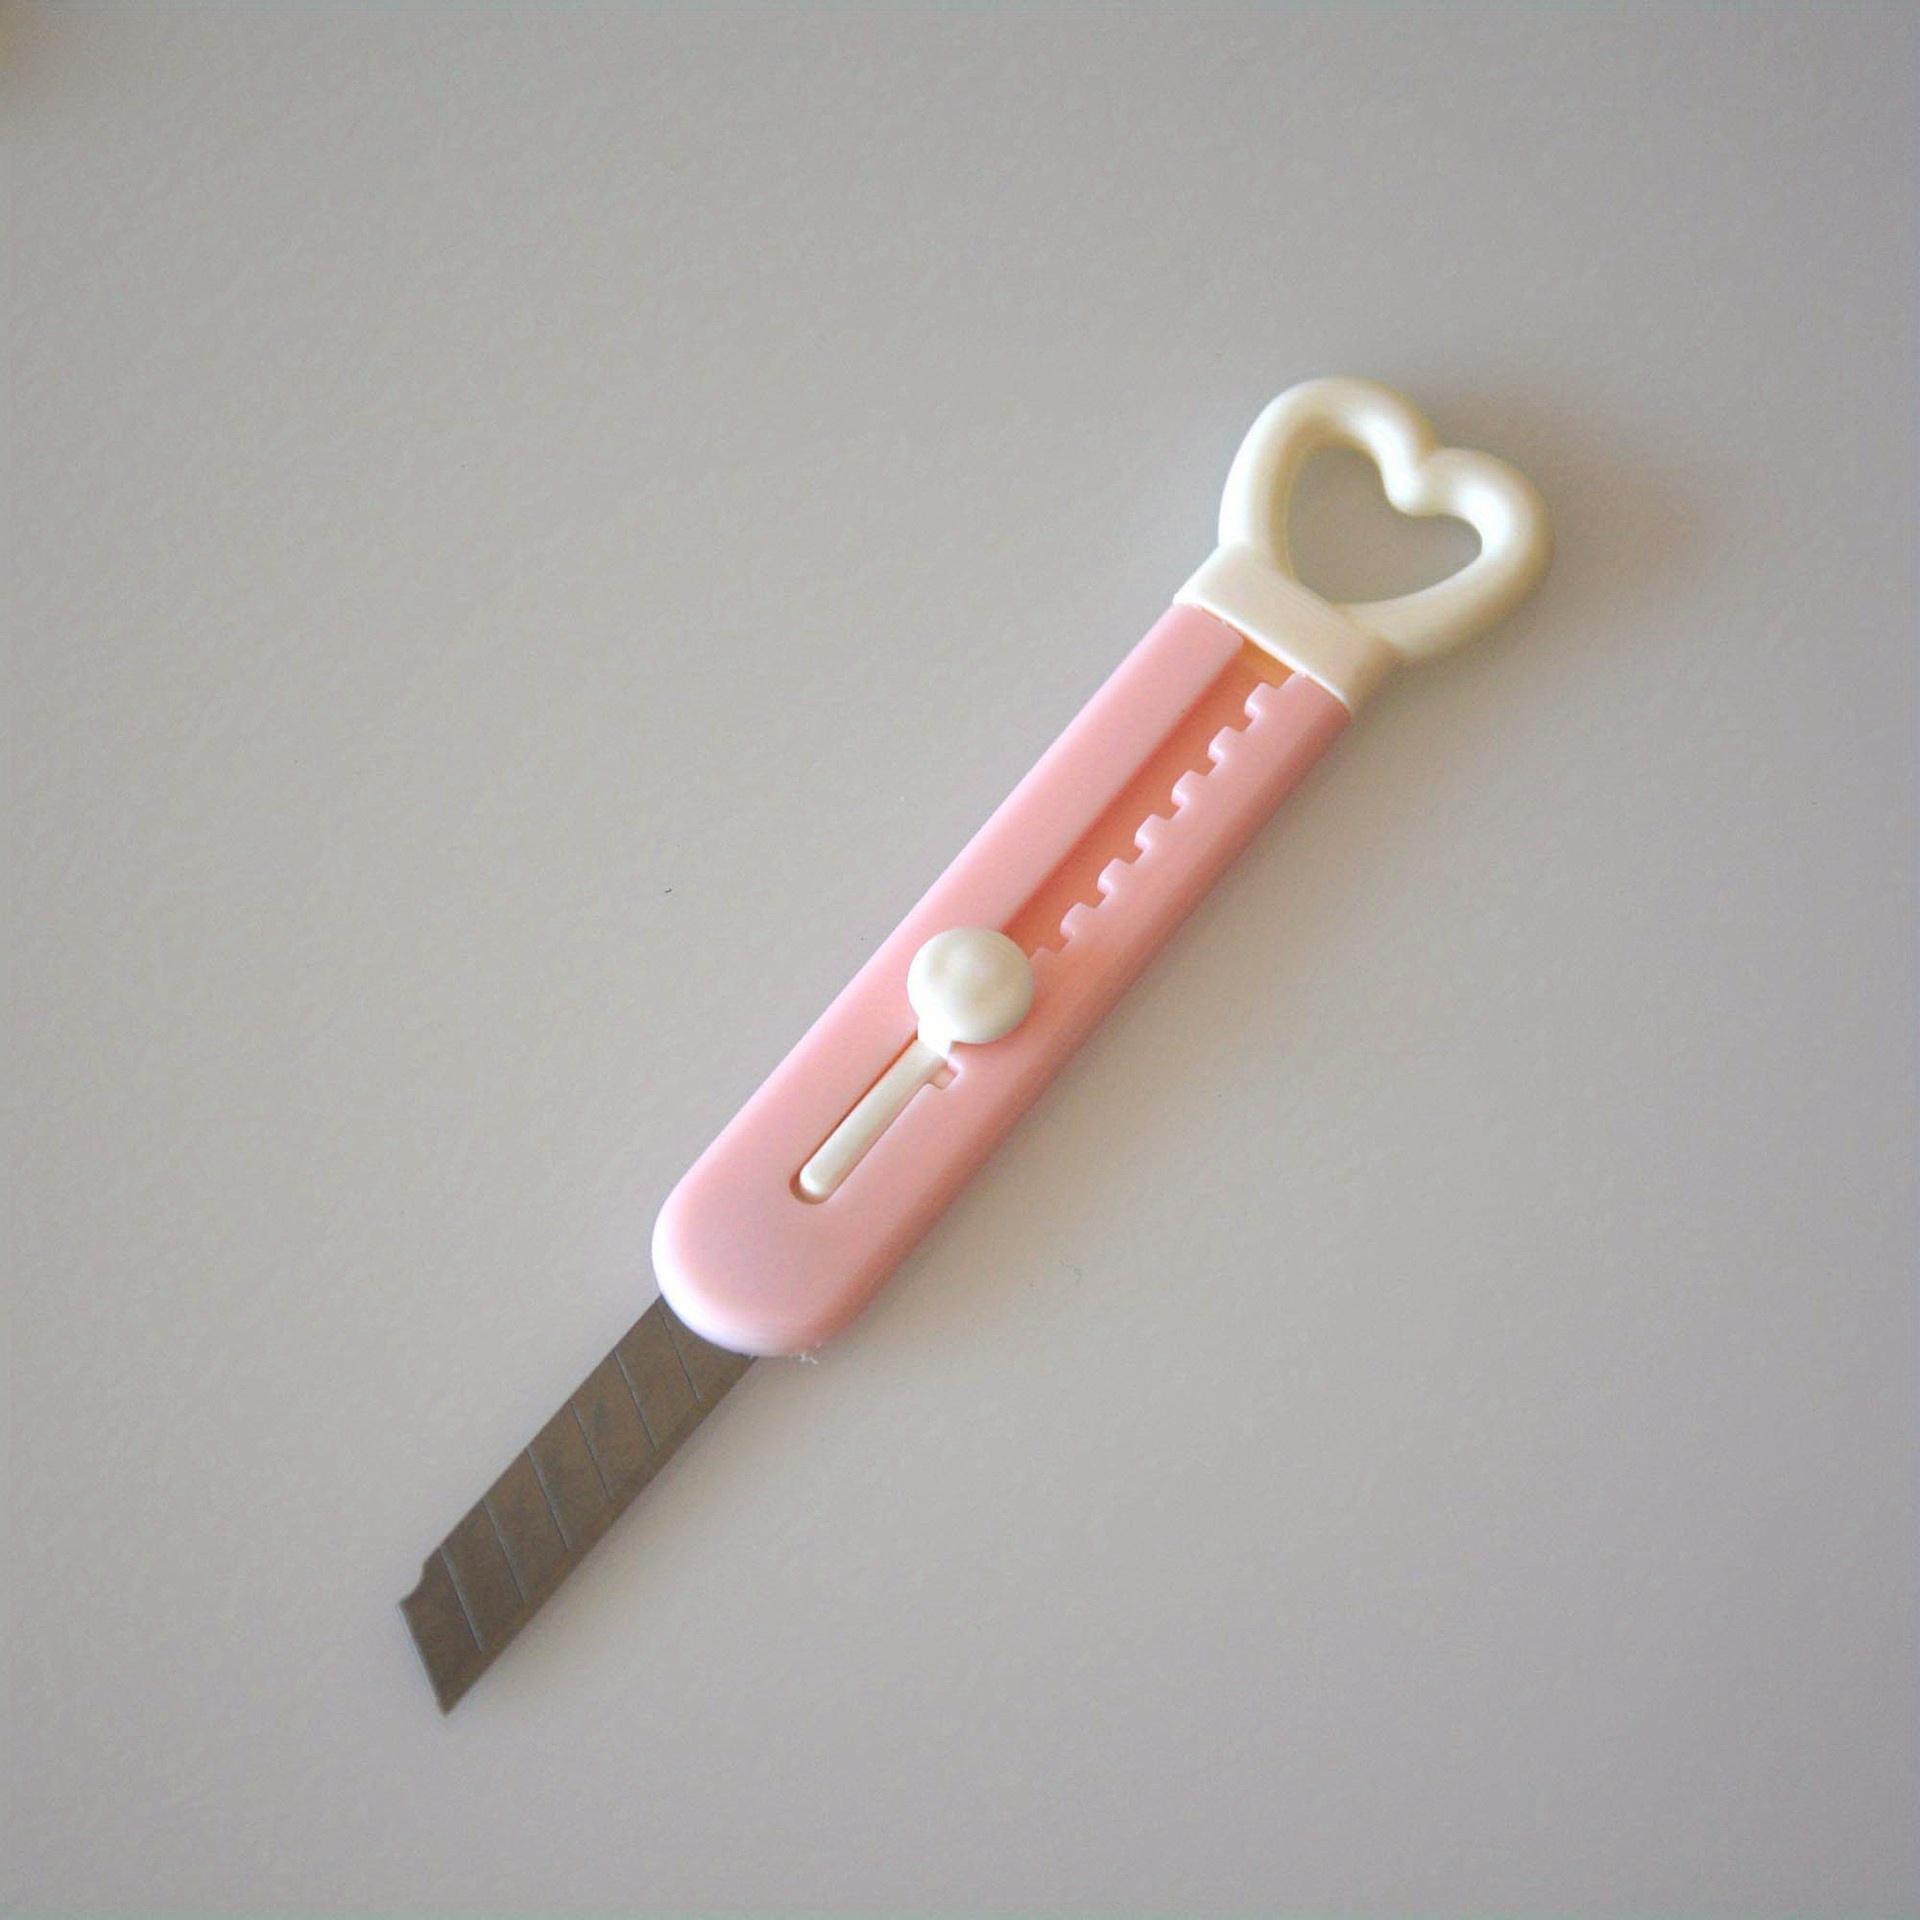 Dropship 1pc Cute Mini Love Heart Utility Knife, Paper Cutter, Art